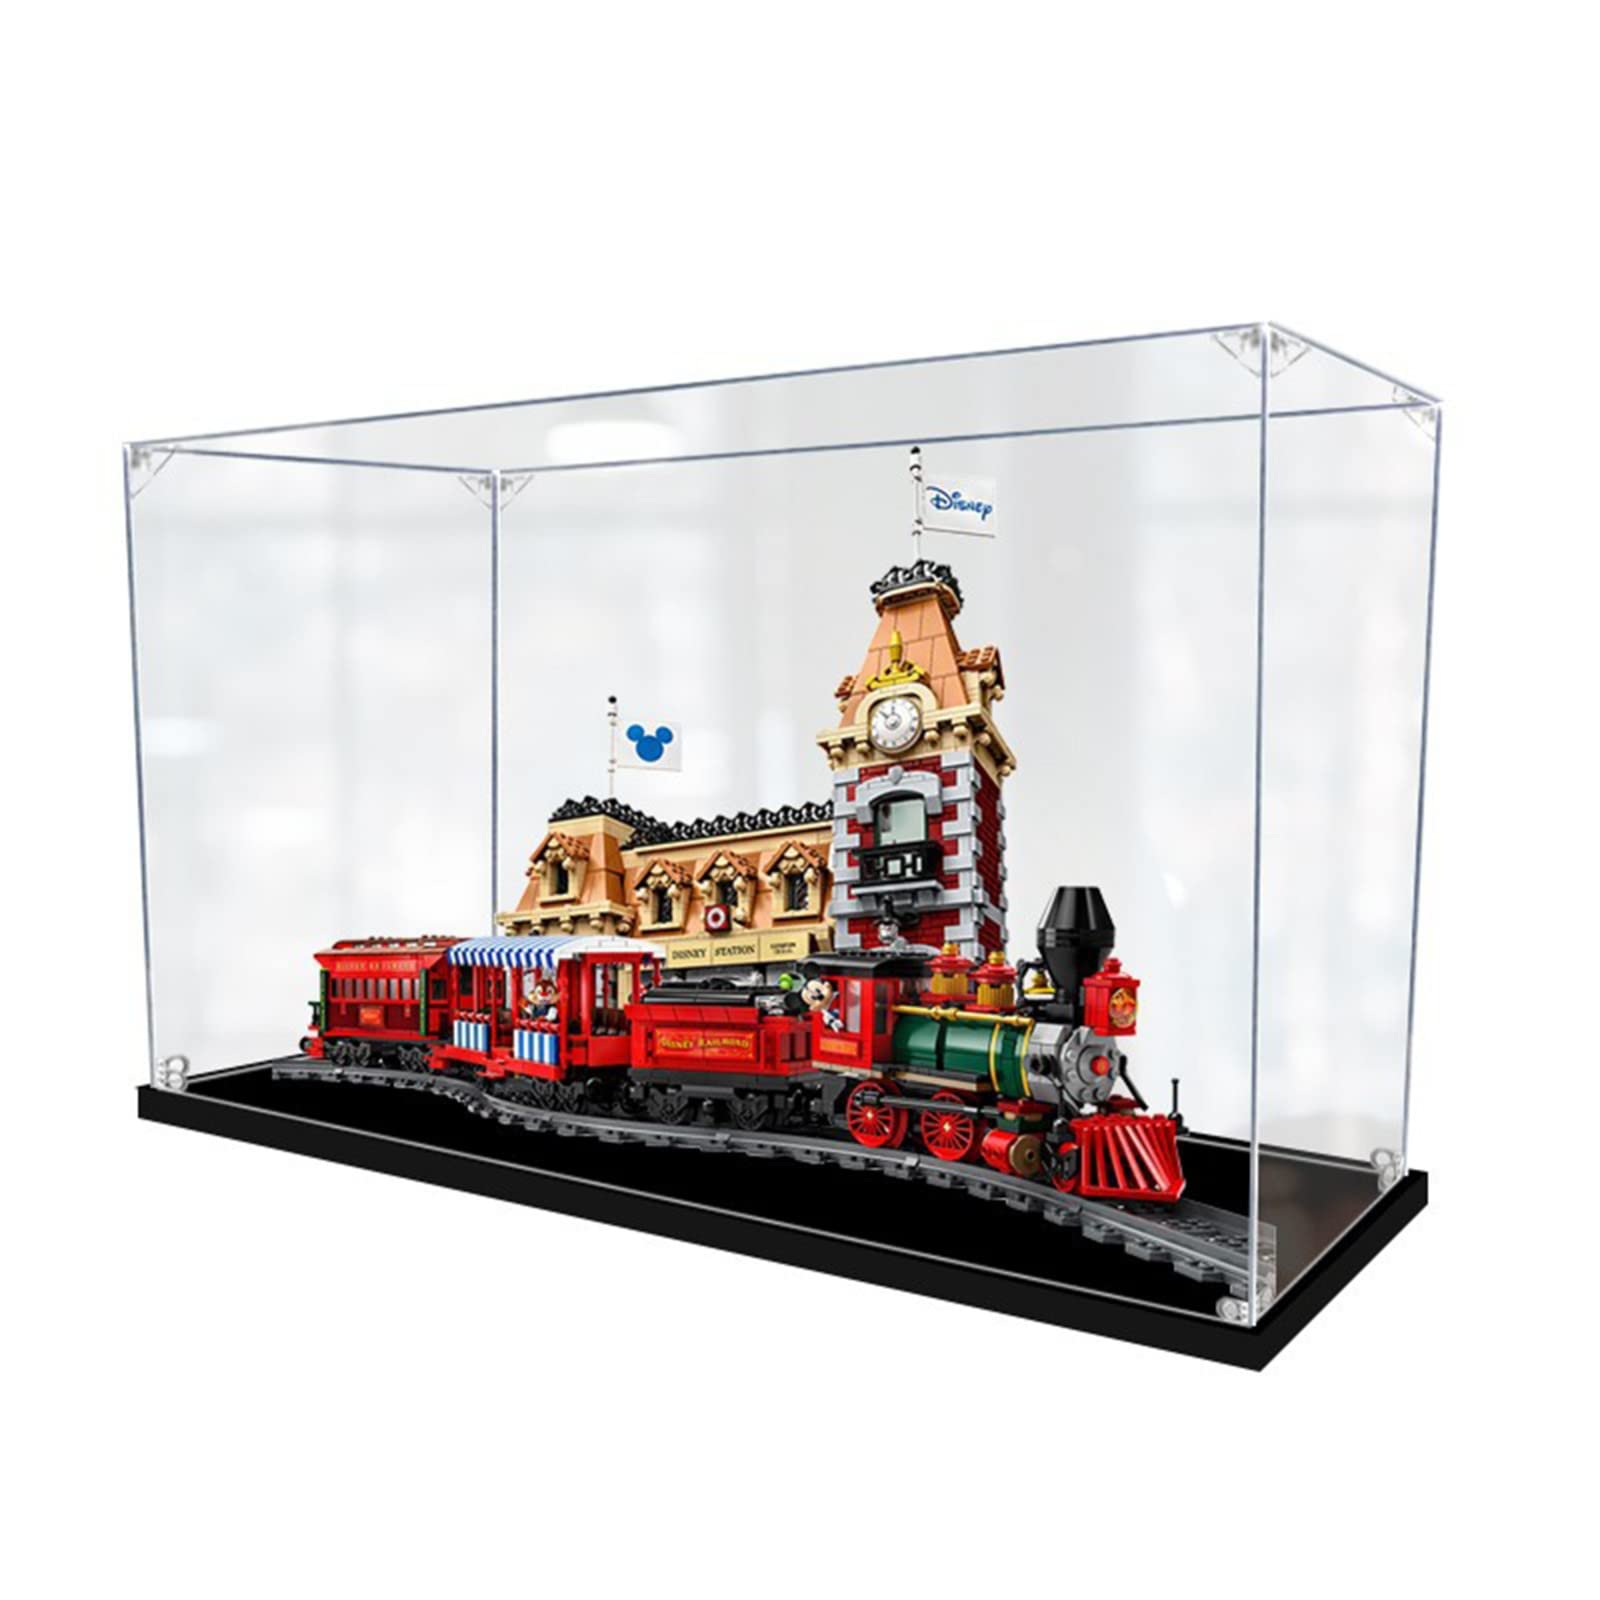 Acryl Vitrine Box Für Lego 71044 Train and Station, Acryl Vitrine, staubdichte Aufbewahrungsbox Präsentationsbox für Minifiguren Spielzeug Sammlung (81 * 32 * 48cm) 3mm